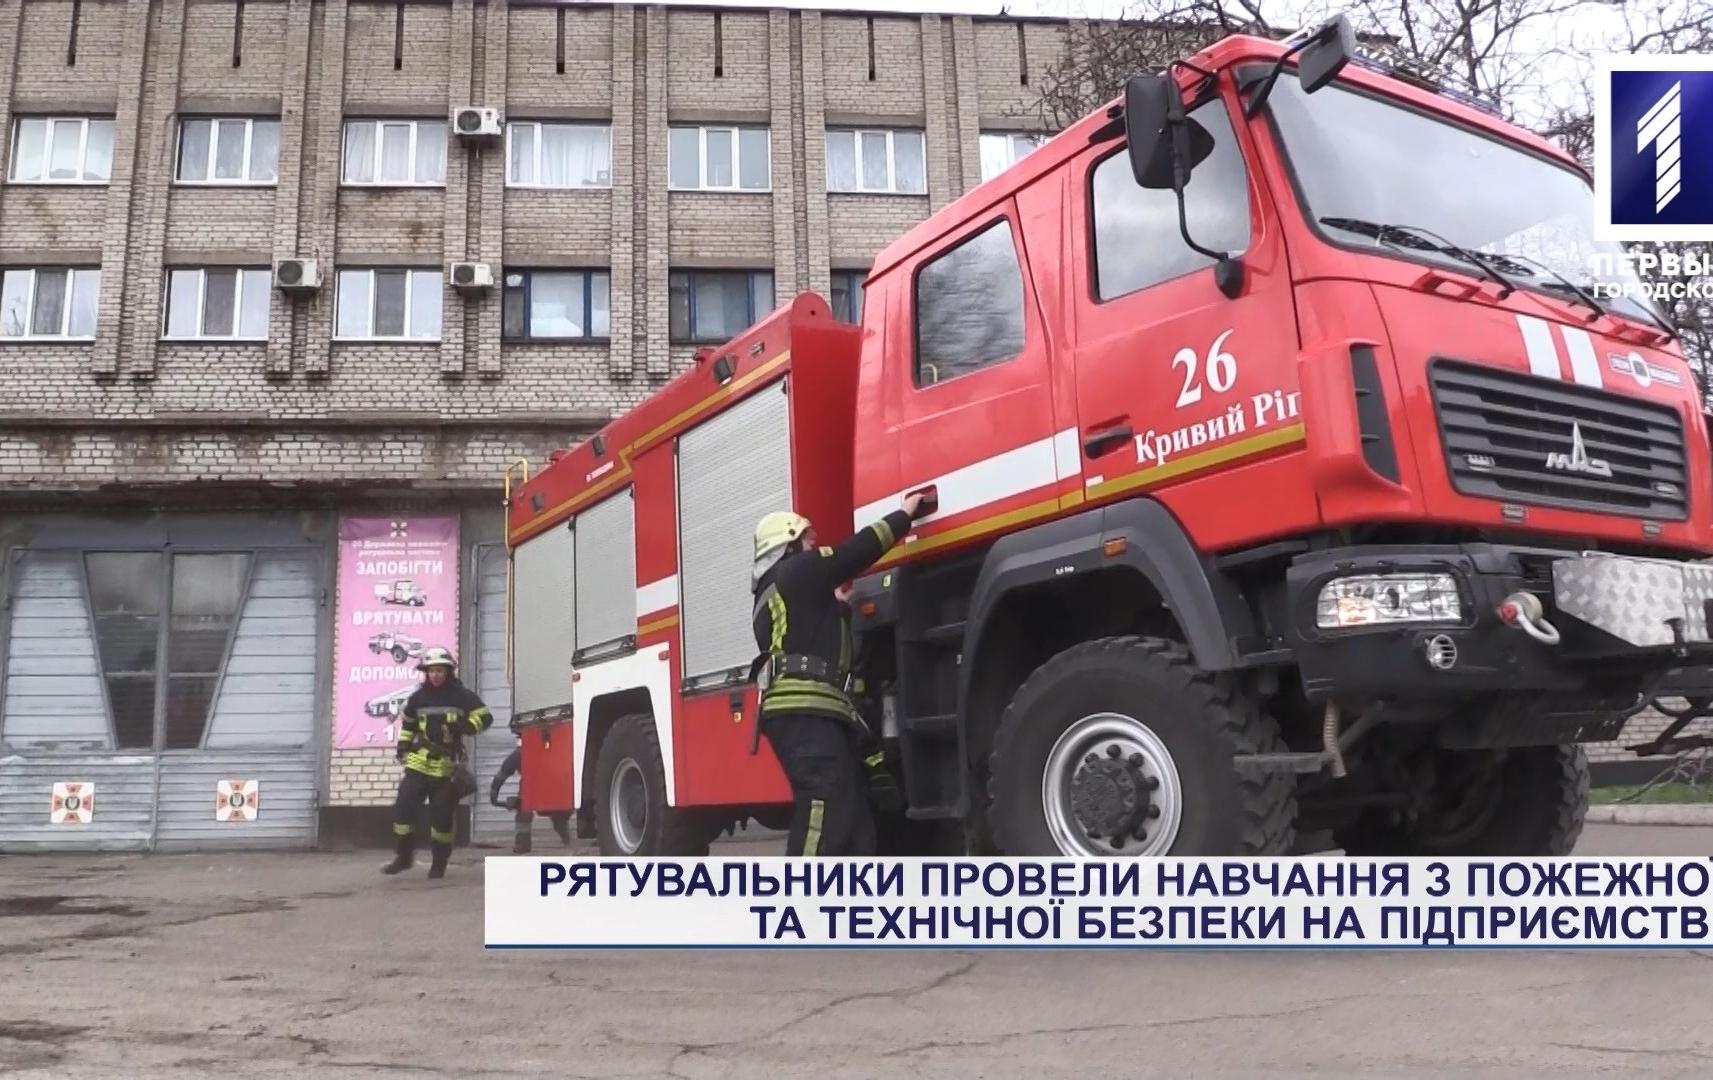 Рятувальники провели навчання з пожежної та технічної безпеки на підприємстві Кривого Рогу